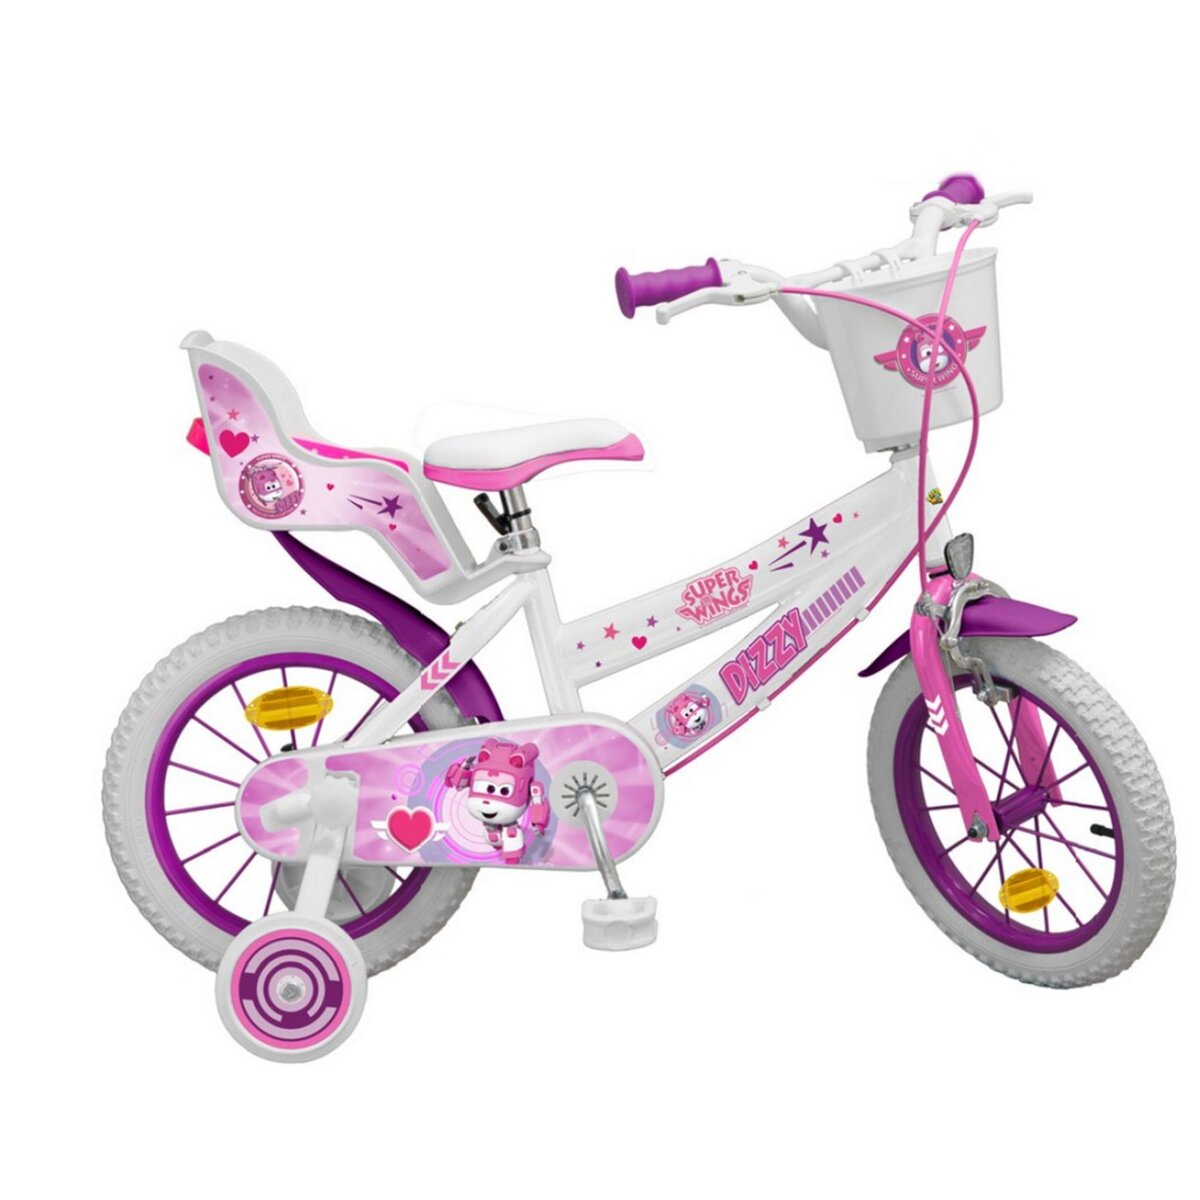 Vélo enfant Disney La Boutique de Minnie - fille - 14 po - rose